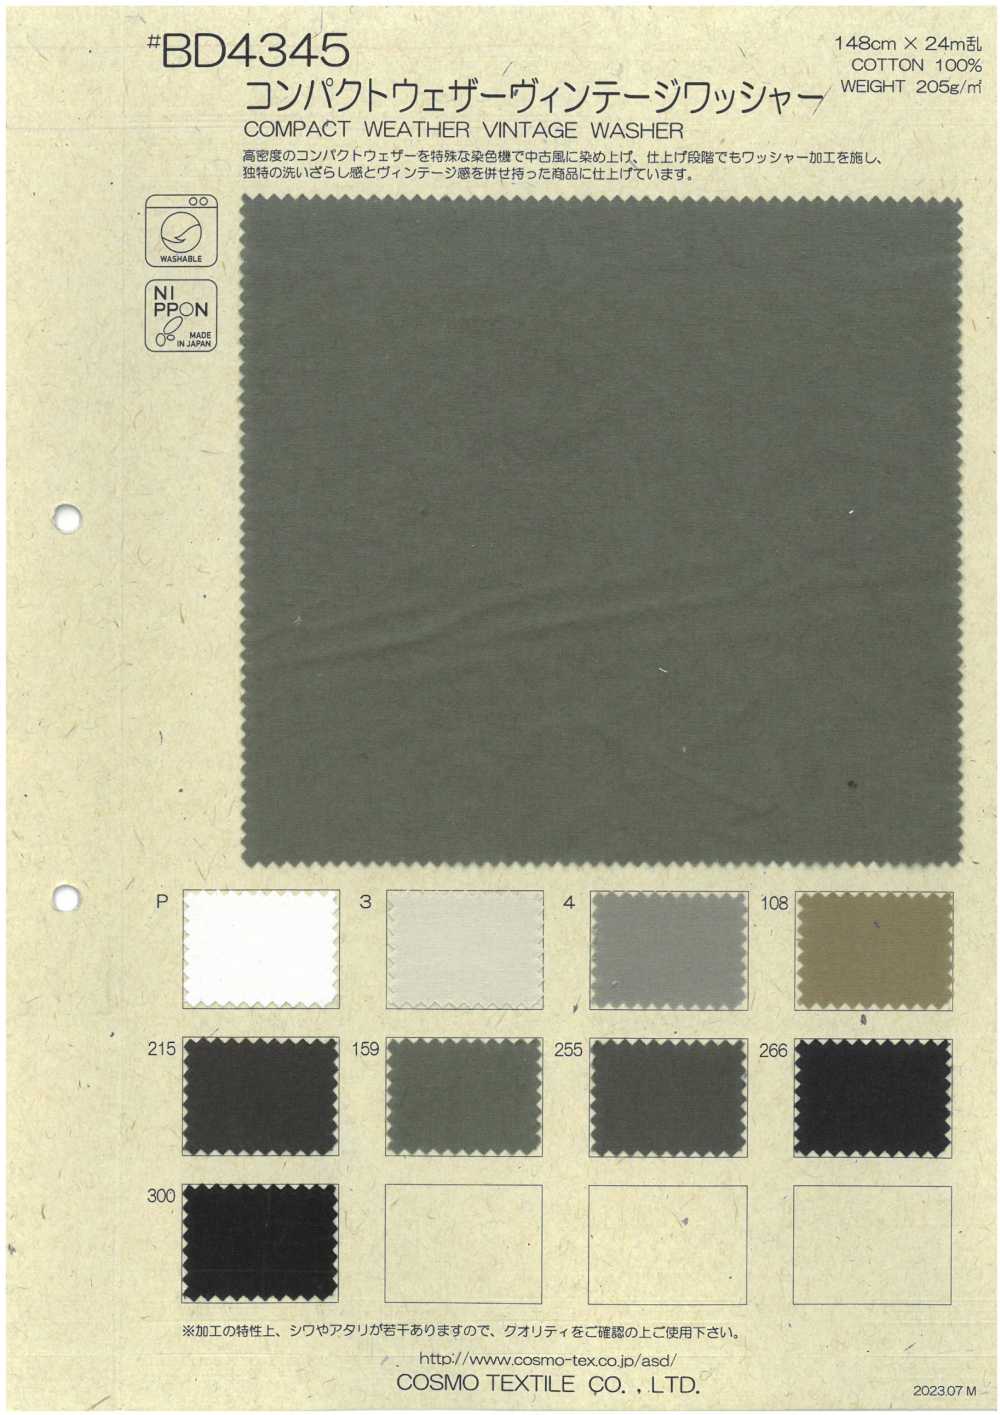 BD4345 Traitement De La Laveuse Vintage En Tissu Météorologique Compact[Fabrication De Textile] COSMO TEXTILE